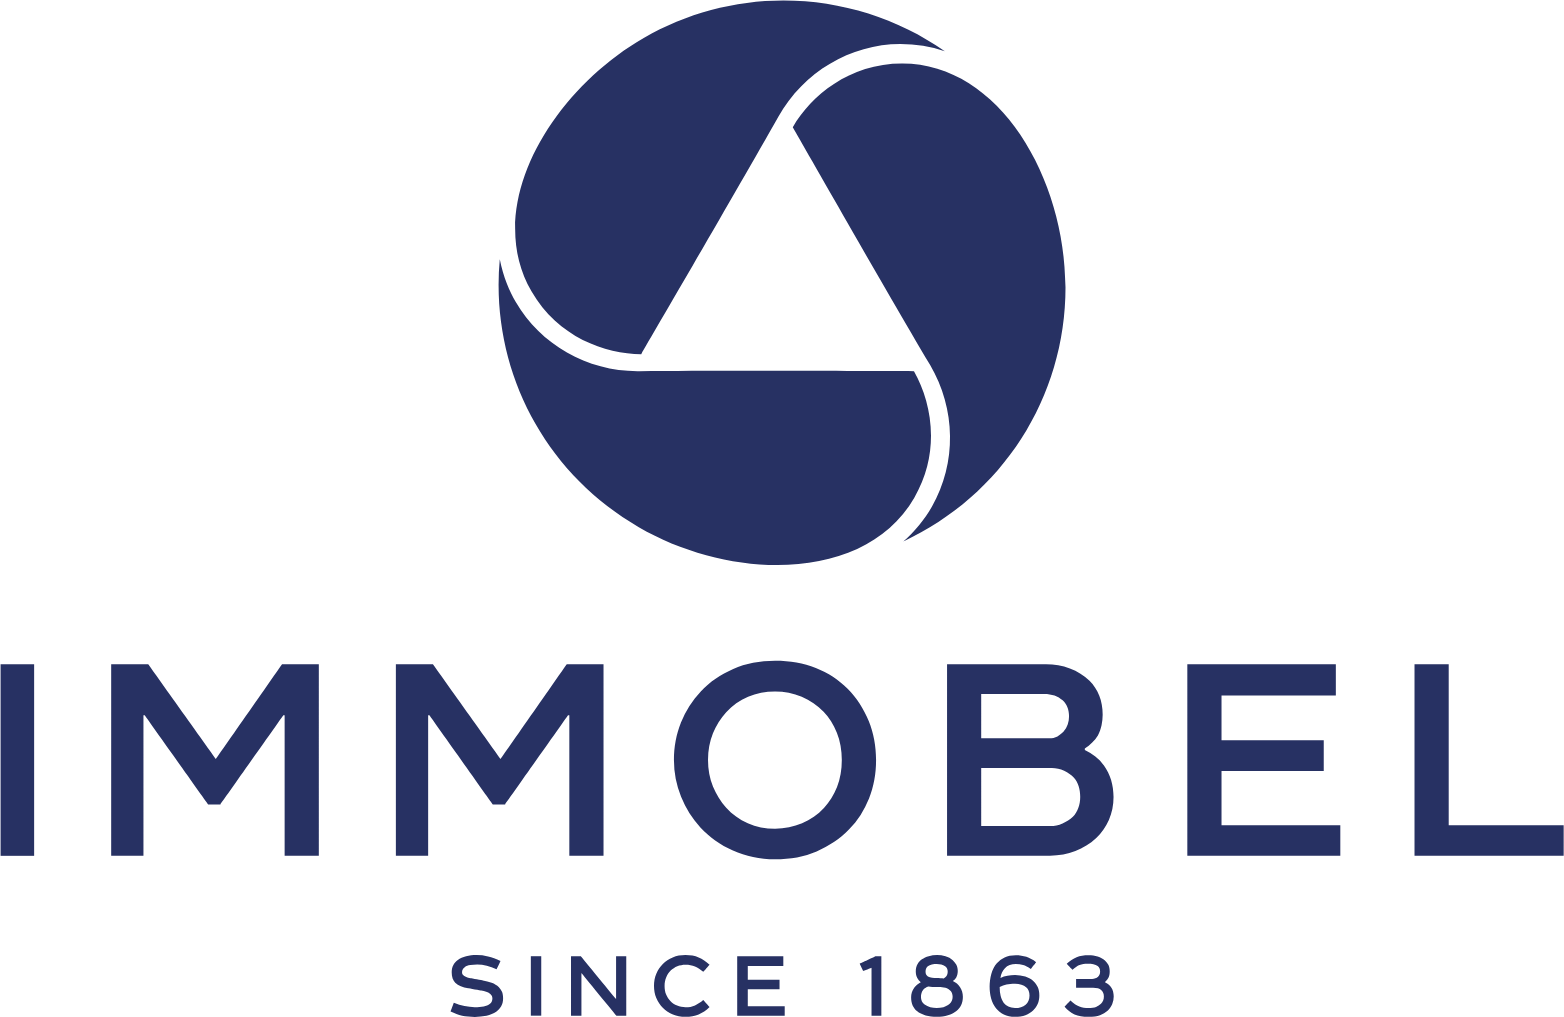 Immobel logo large (transparent PNG)